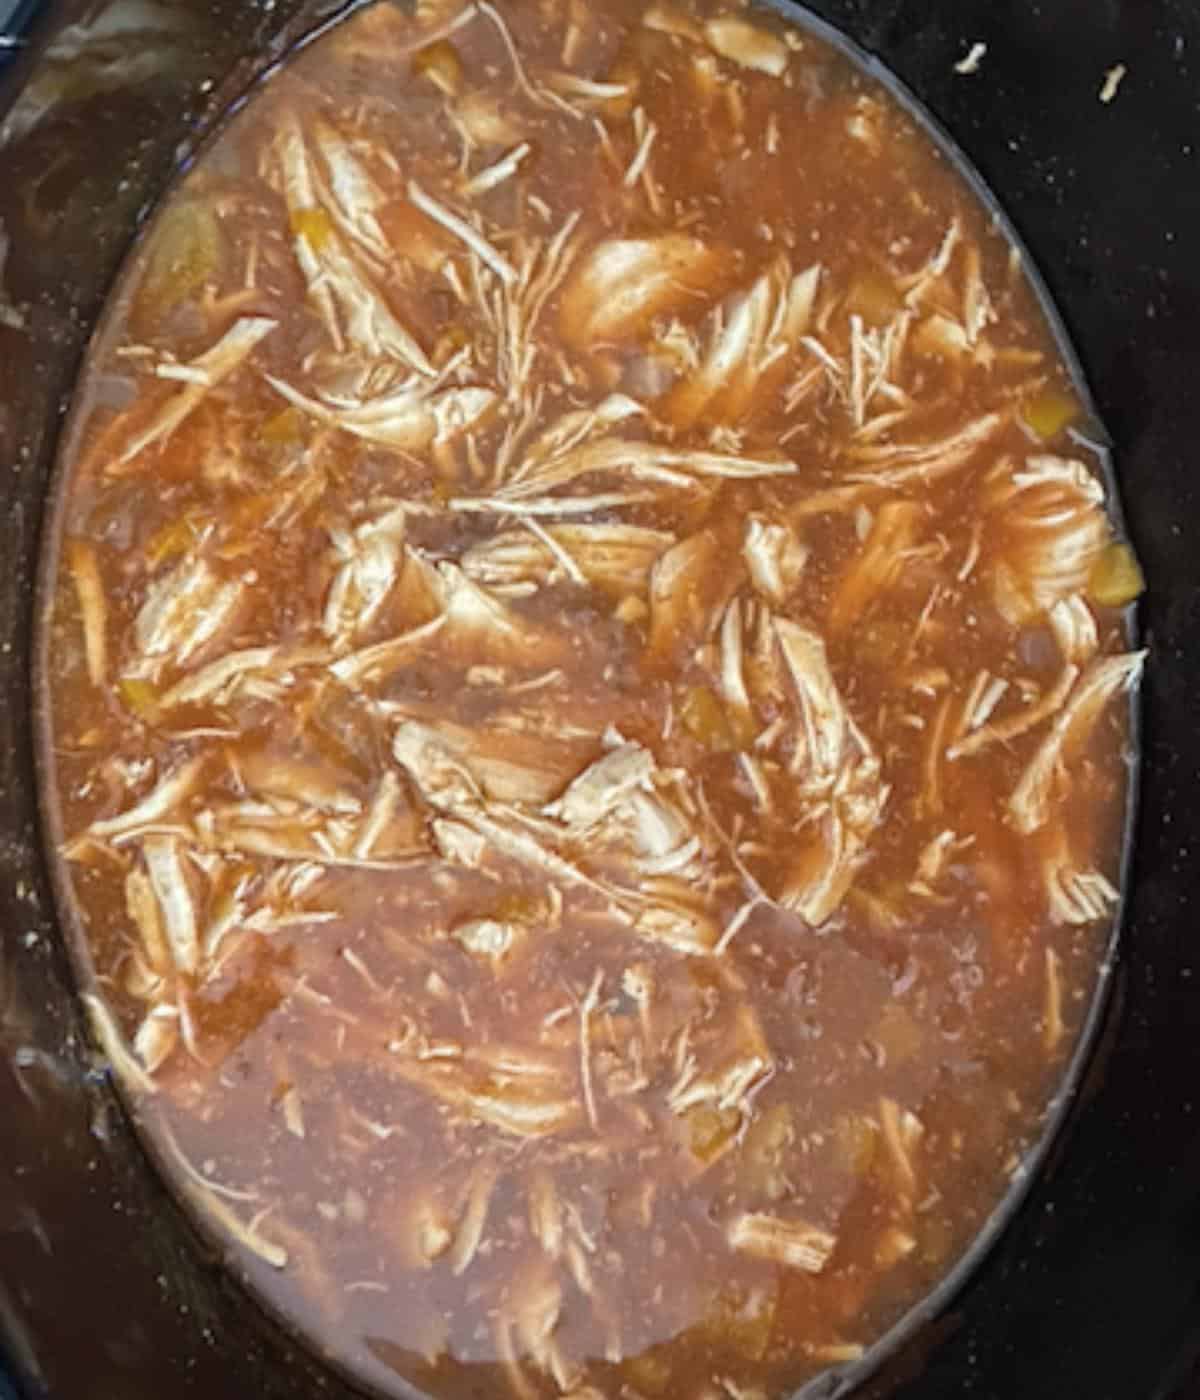 chicken shredded up in crock pot